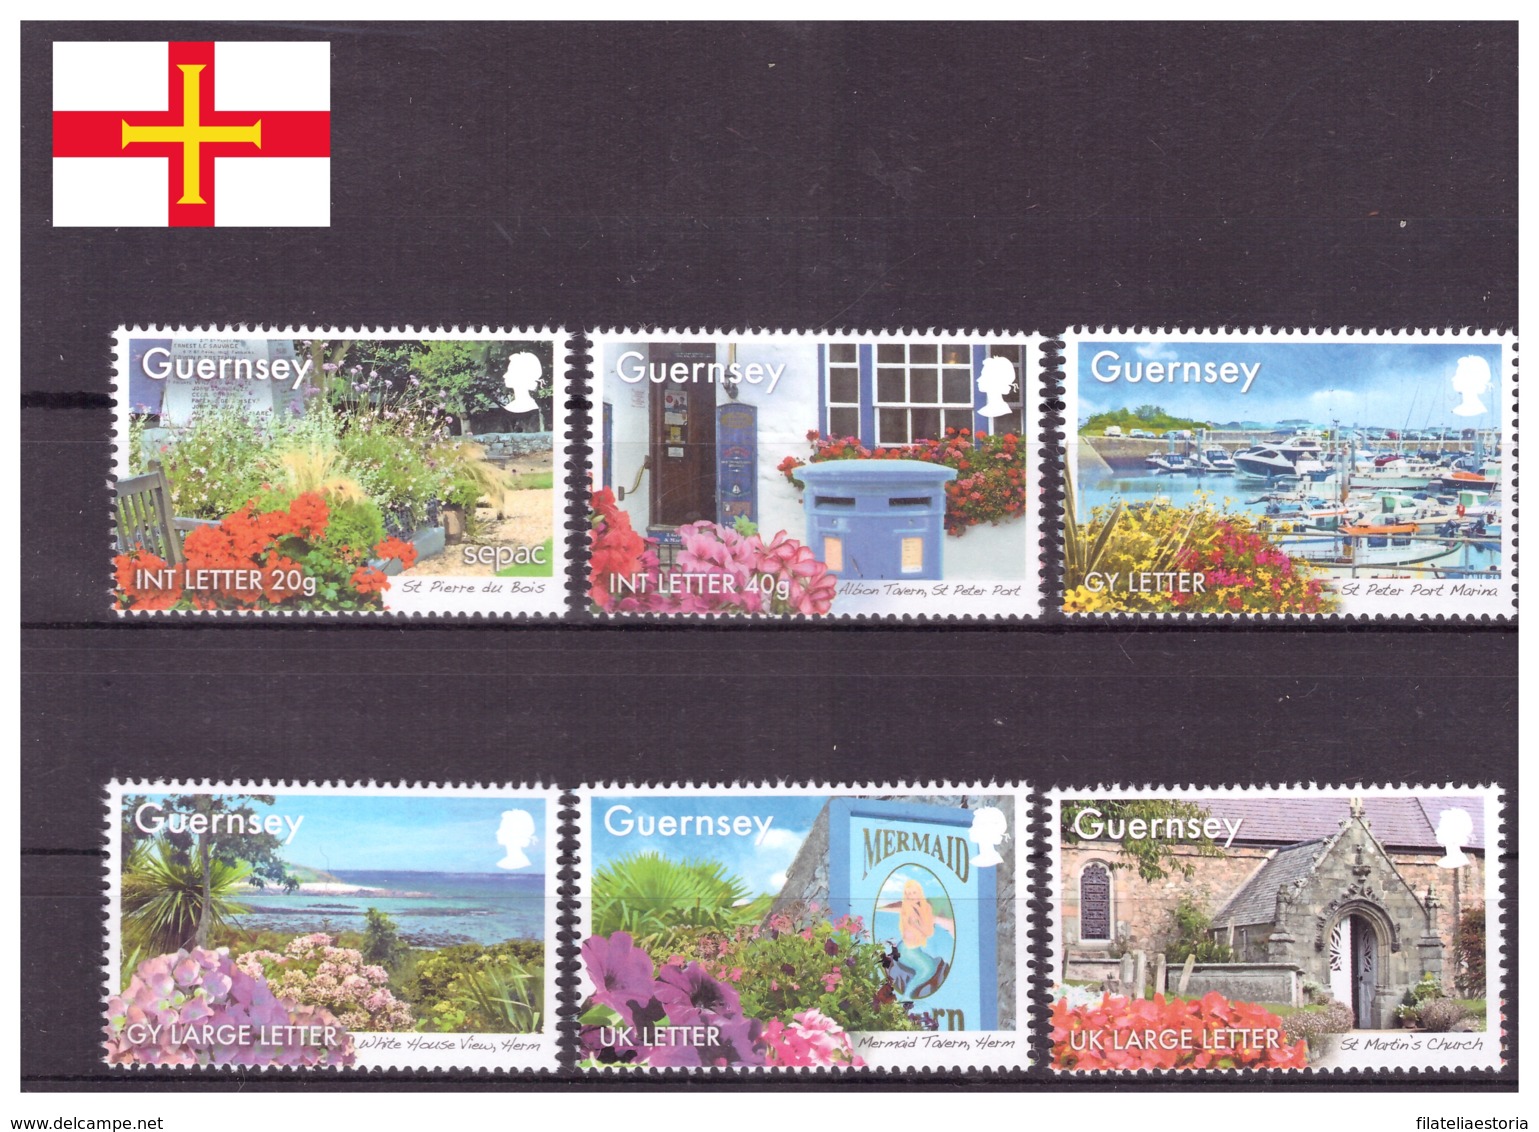 Guernsey 2014 - MNH ** - Fleurs - Tourisme - Michel Nr. 1468-1473 Série Complète (gbg291) - Guernesey